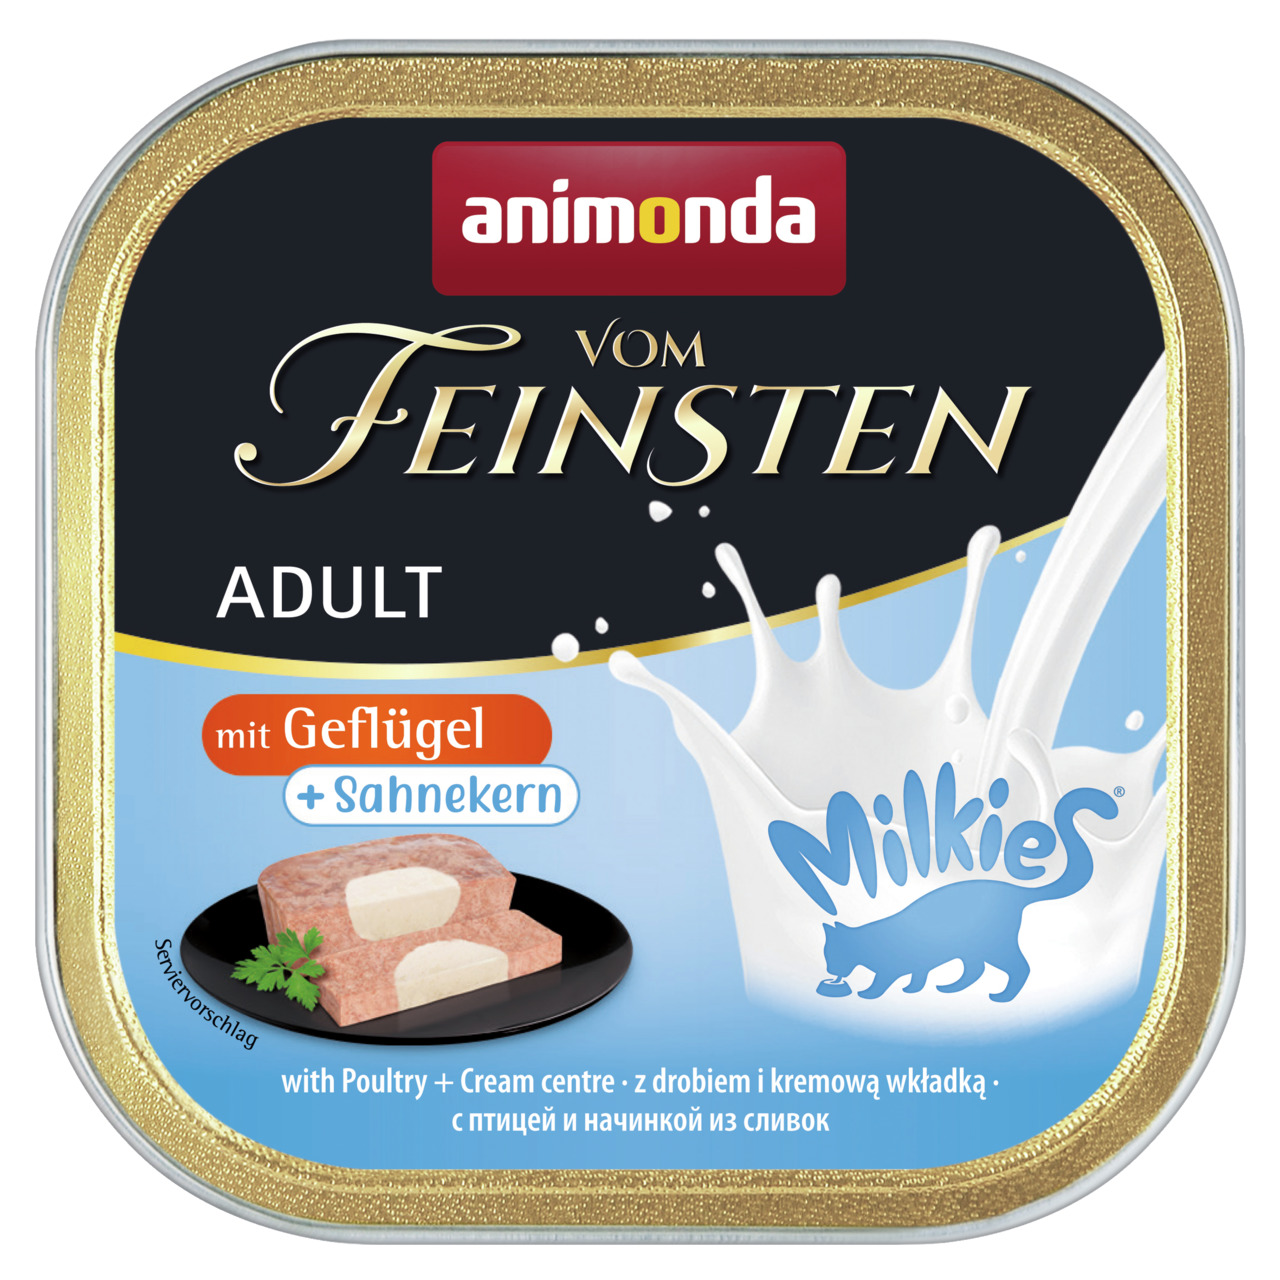 Sparpaket 8 x 100 g Animonda Vom Feinsten Adult mit Geflügel + Sahnekern Milkies Katzen Nassfutter